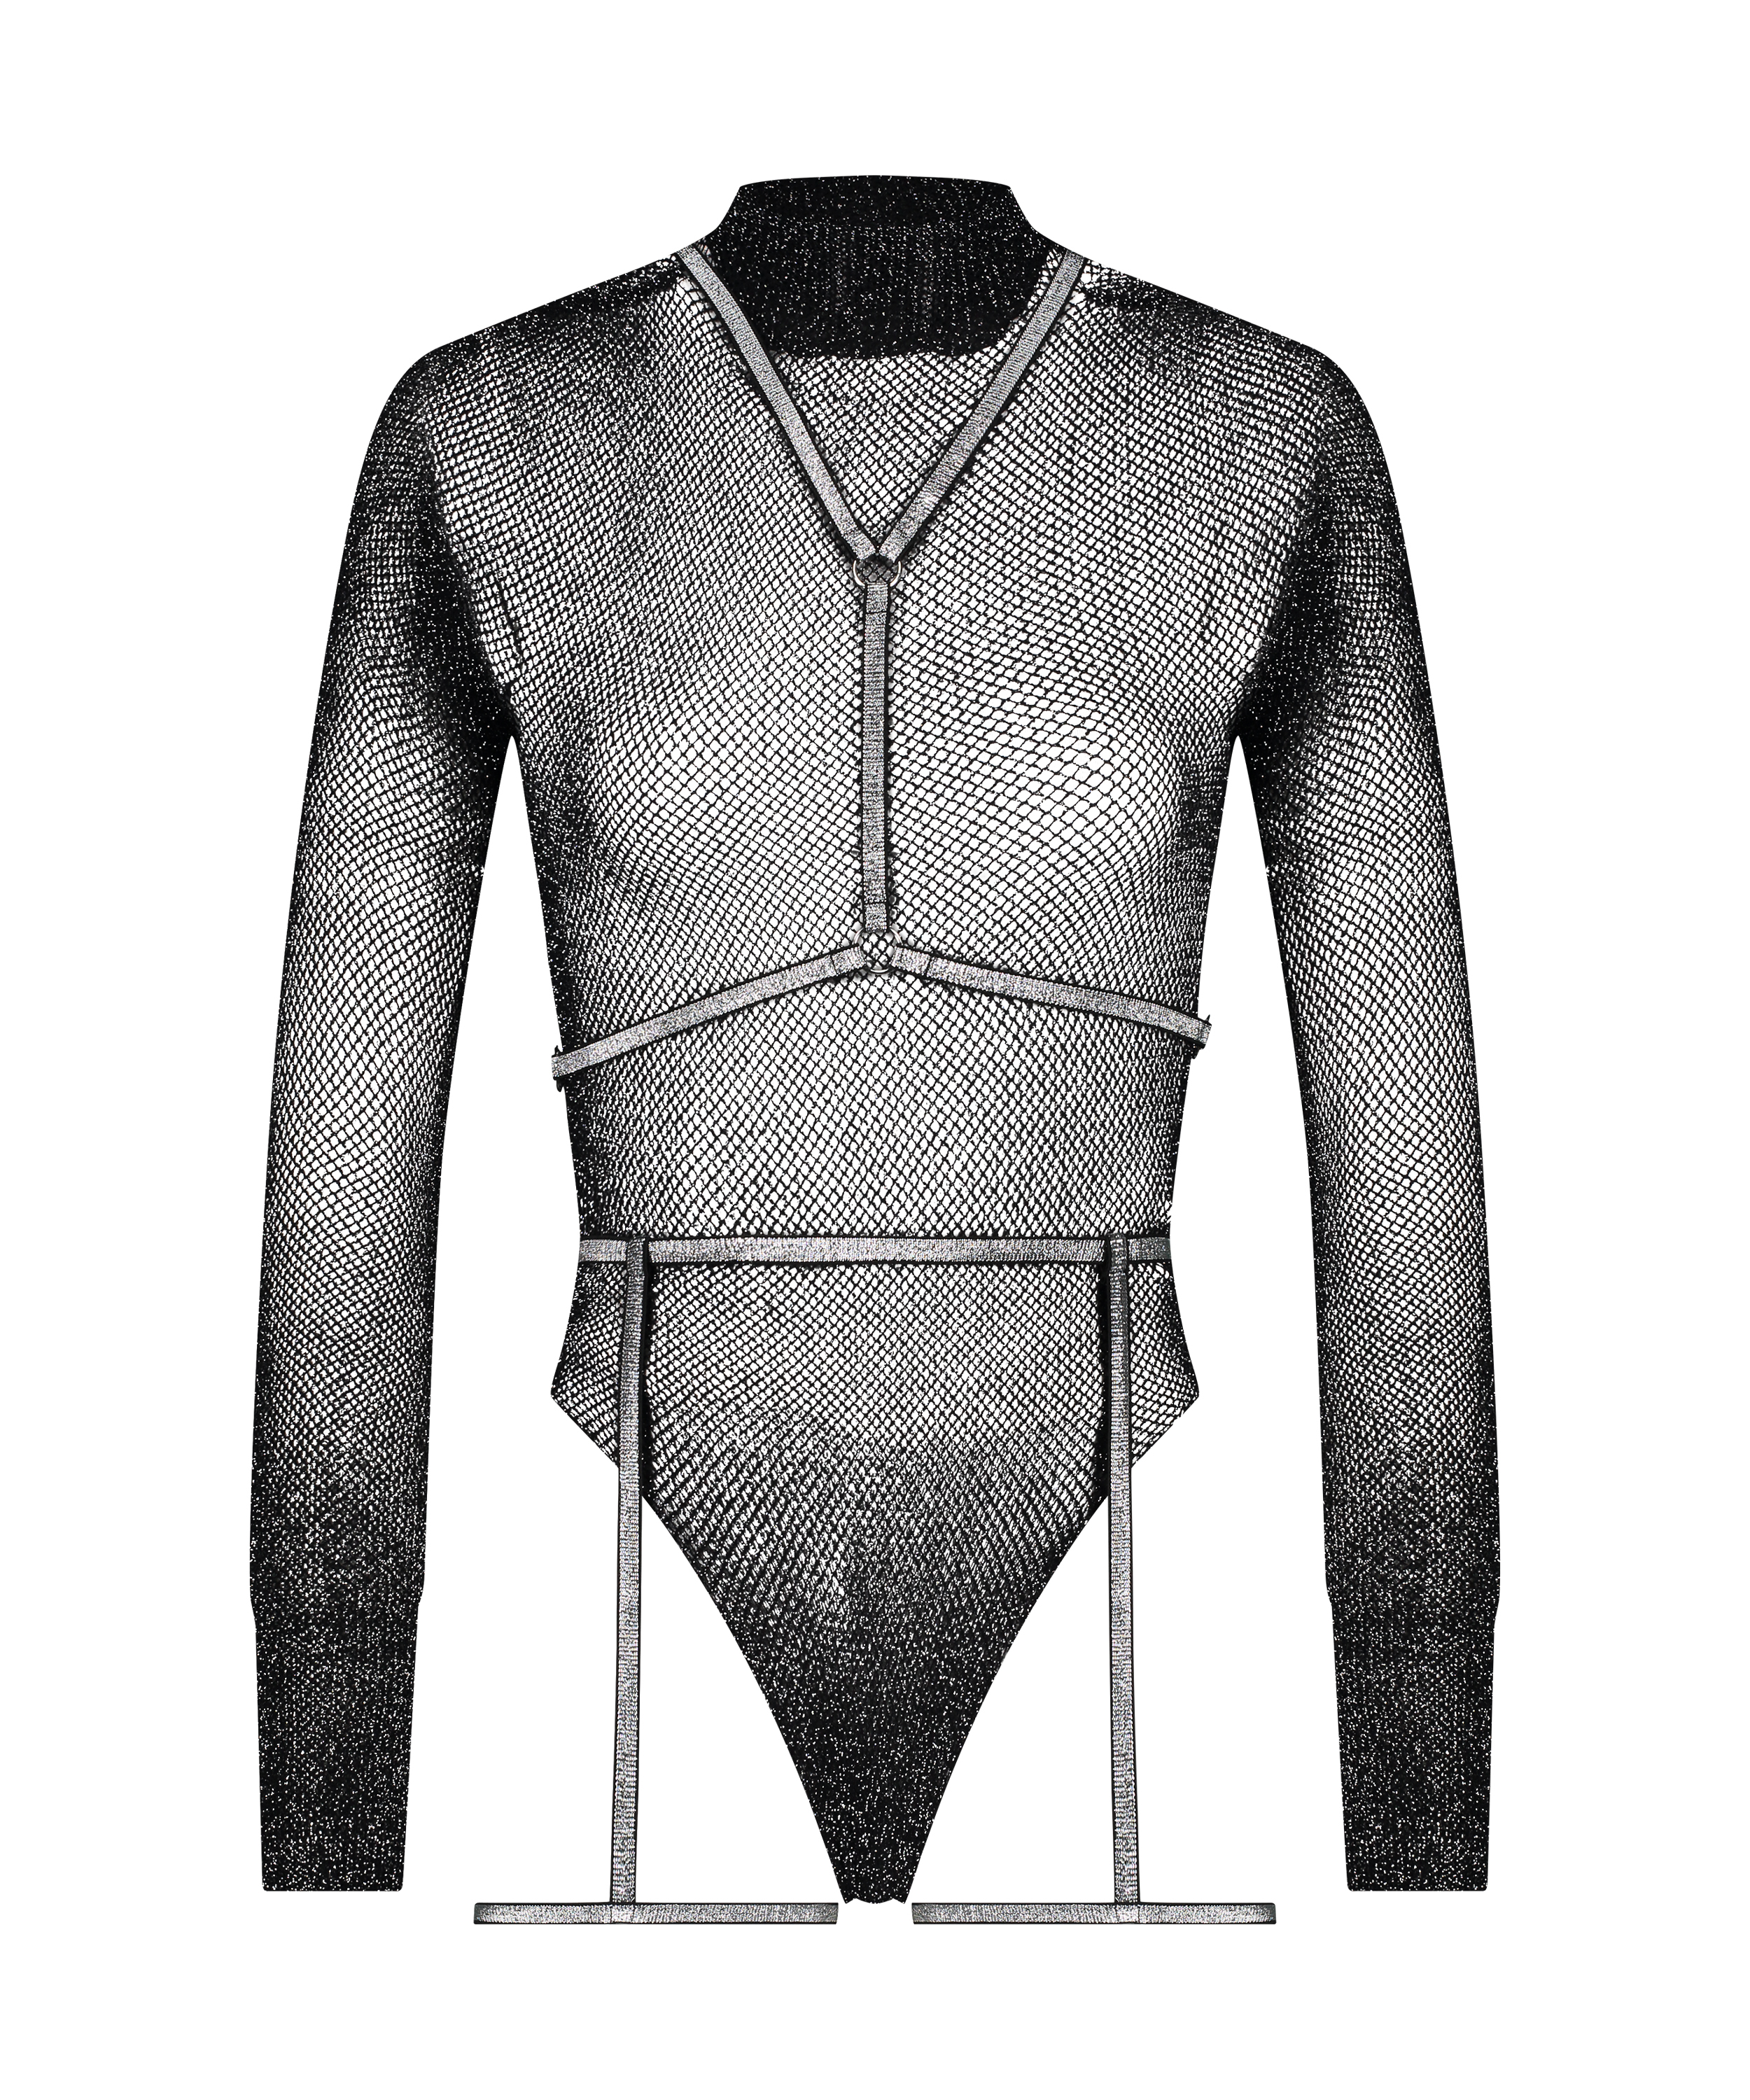 Private Body Harness Set, Black, main